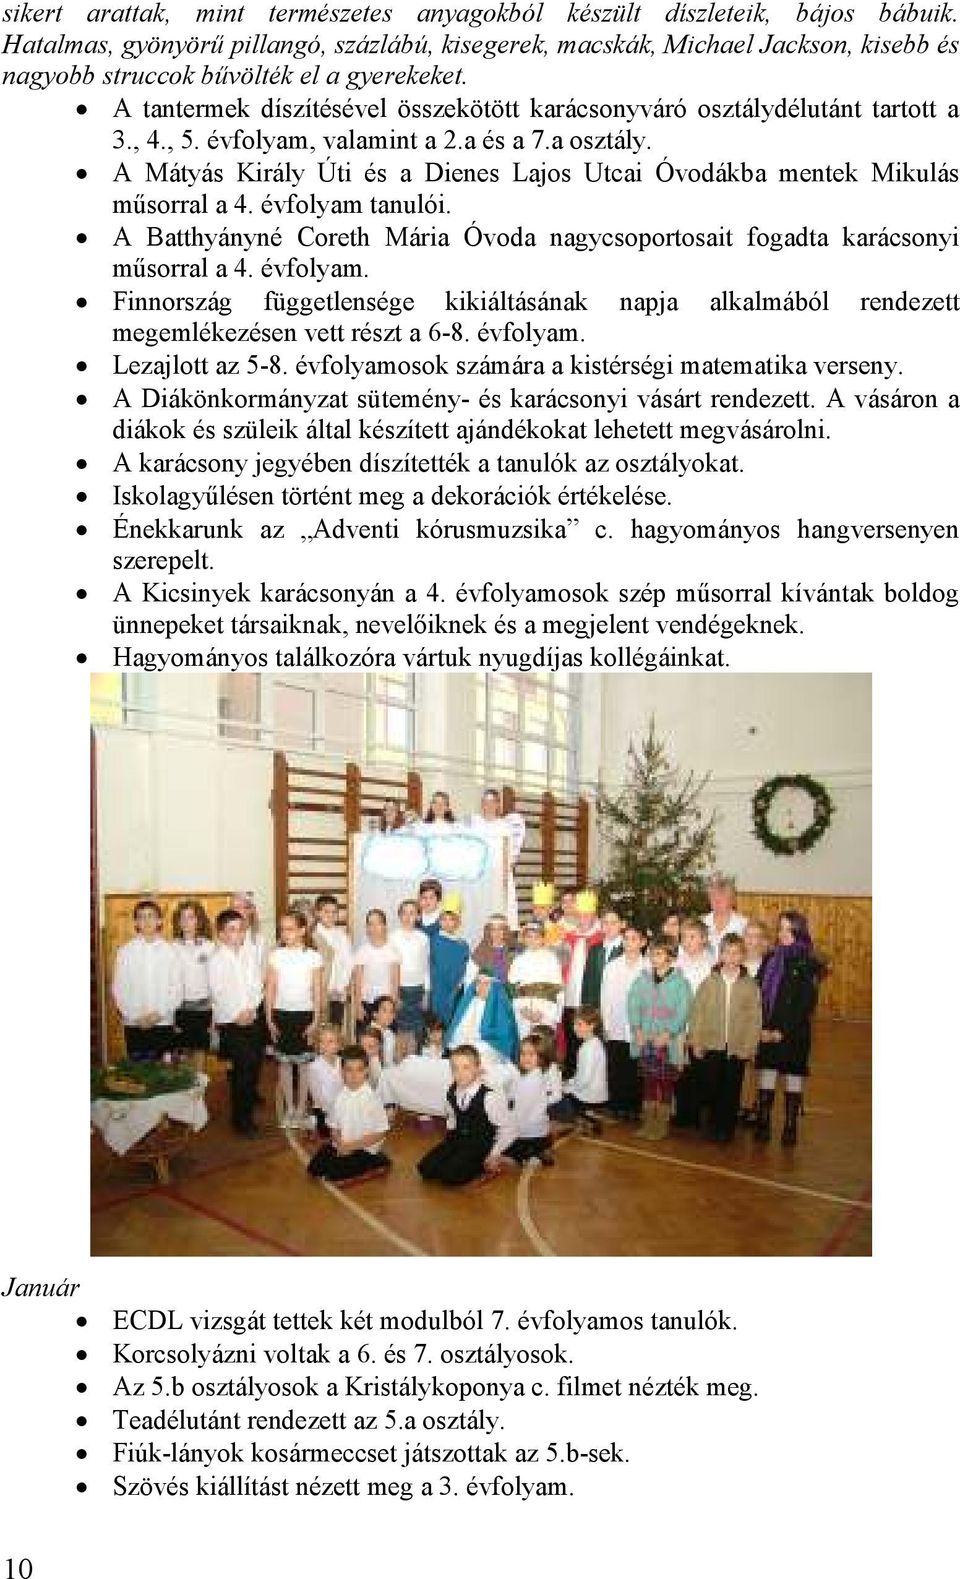 A tantermek díszítésével összekötött karácsonyváró osztálydélutánt tartott a 3., 4., 5. évfolyam, valamint a 2.a és a 7.a osztály.